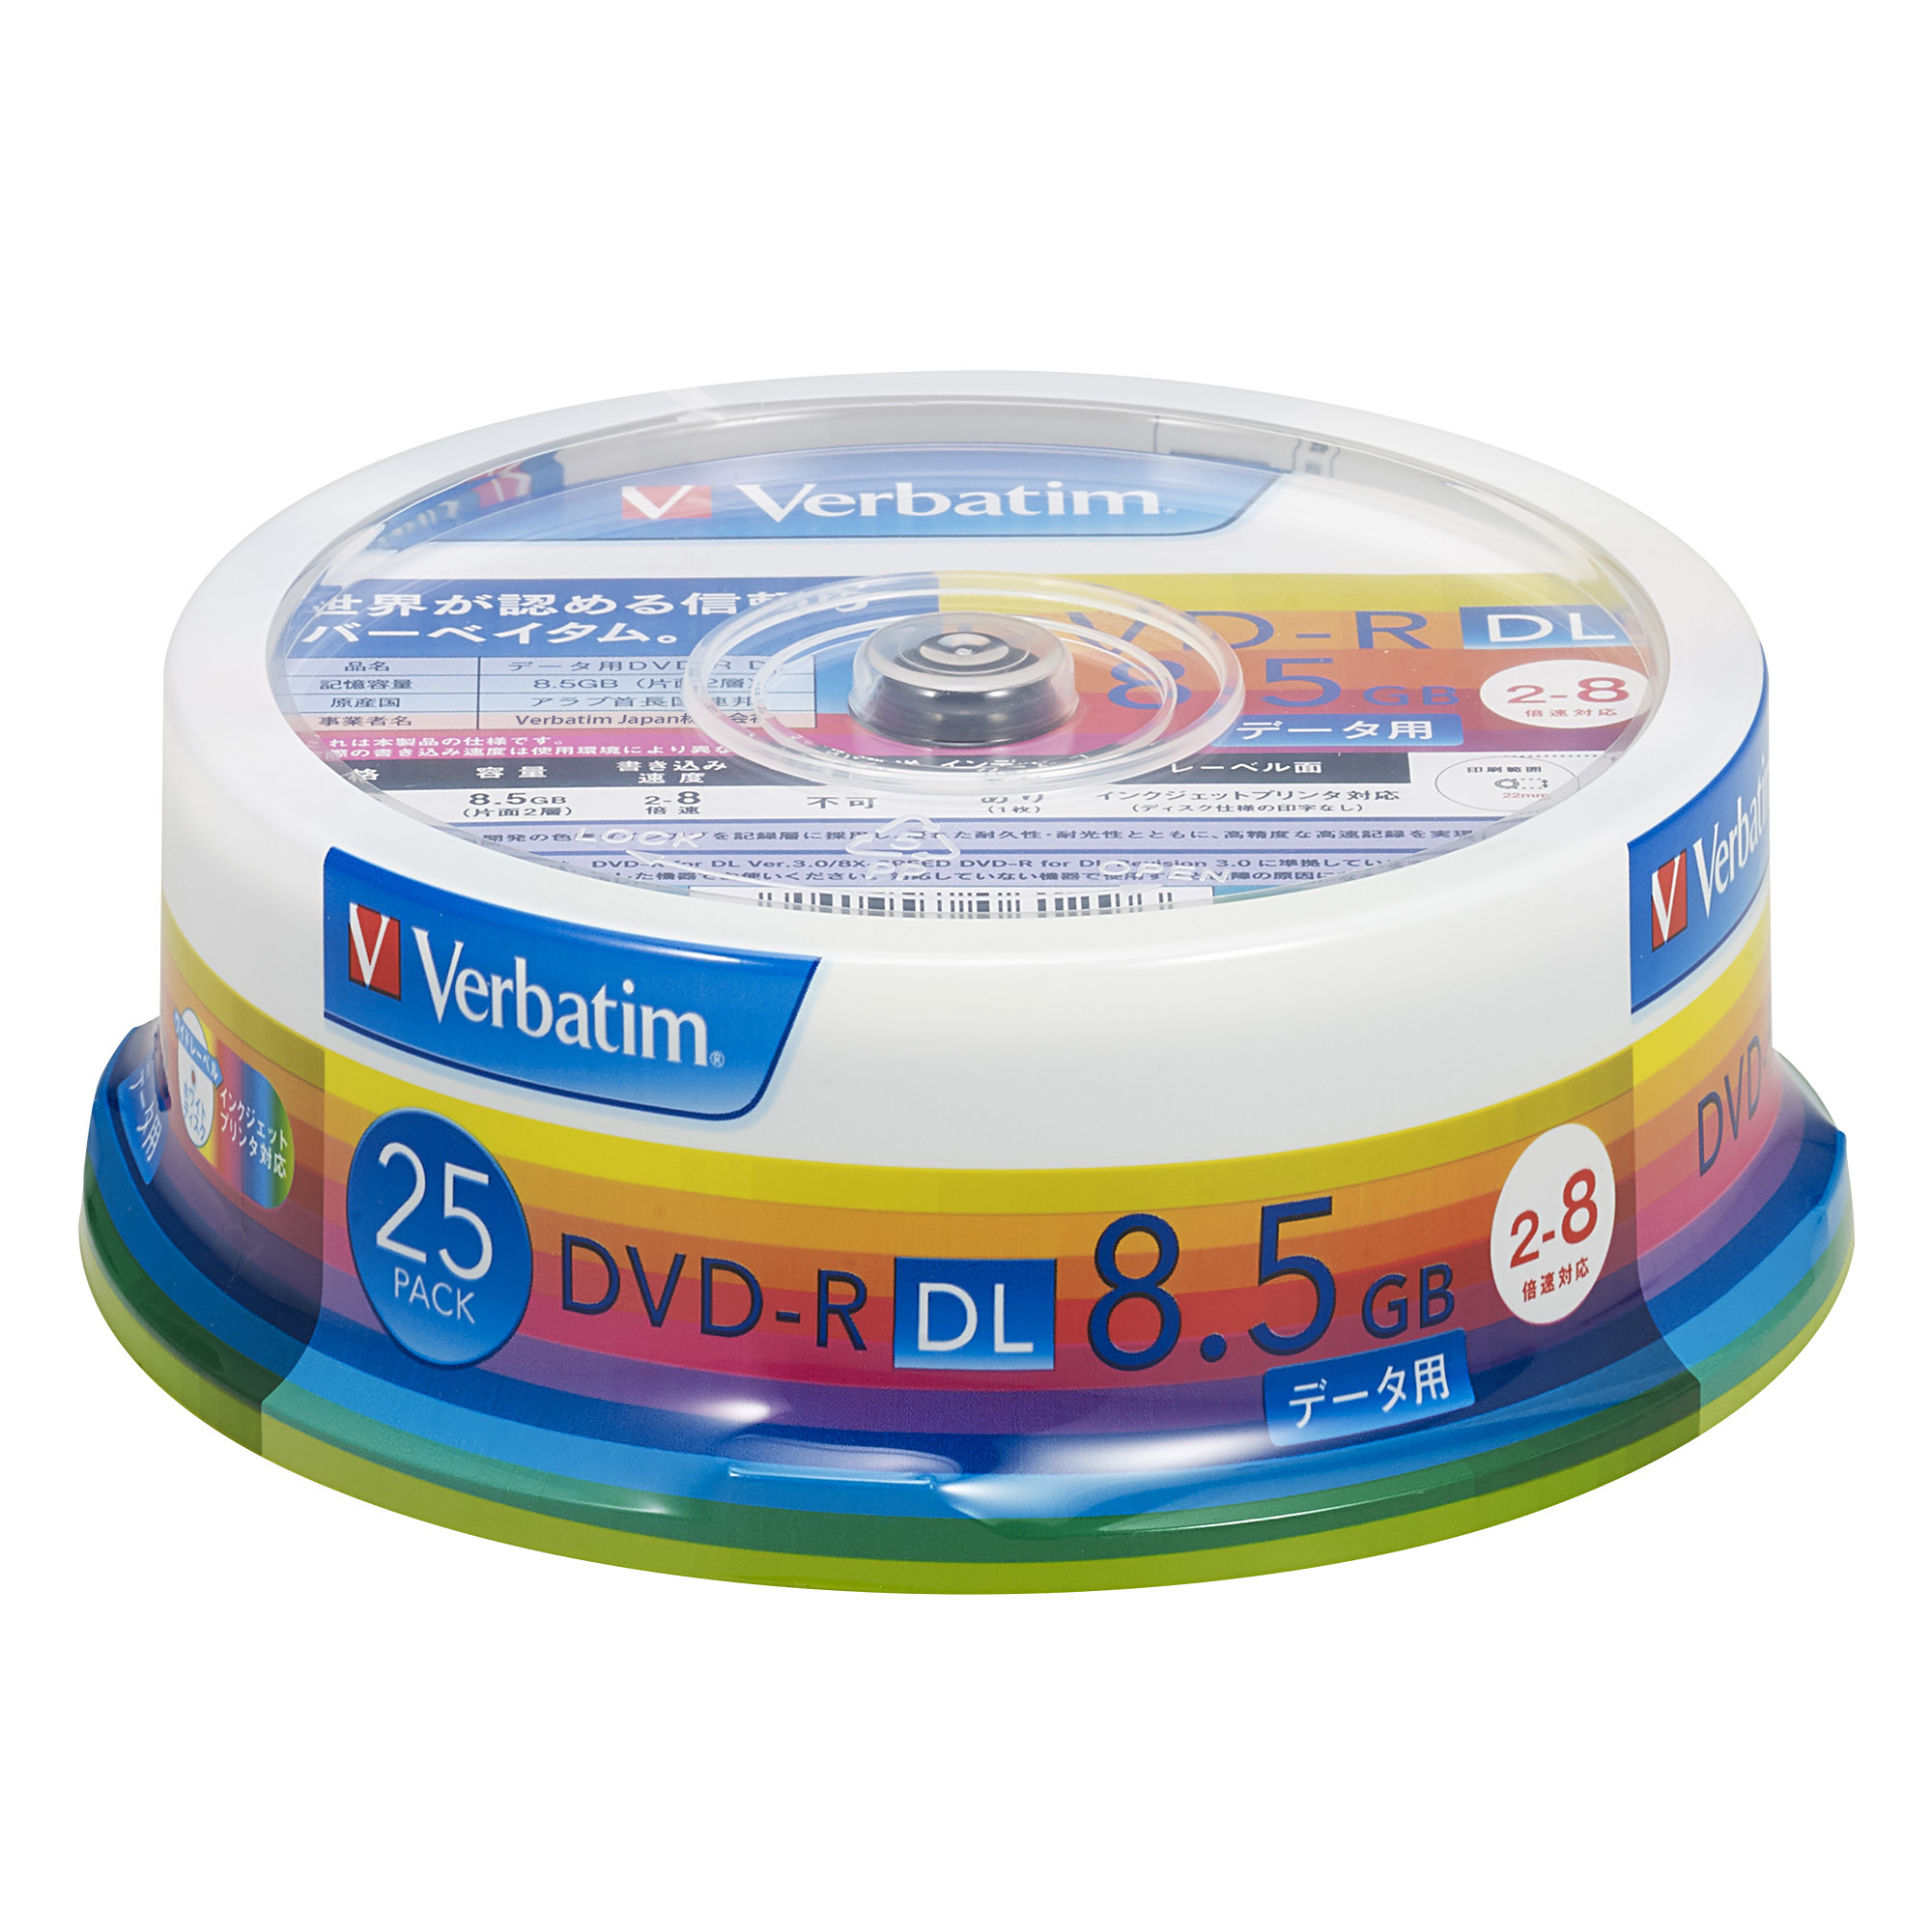 バーベイタム DHR85HP25V1 データ用8倍速対応DVD-R DL 25枚パック 8.5GB ホワイトプリンタブル[DHR85HP25V1バベイタム] 返品種別A